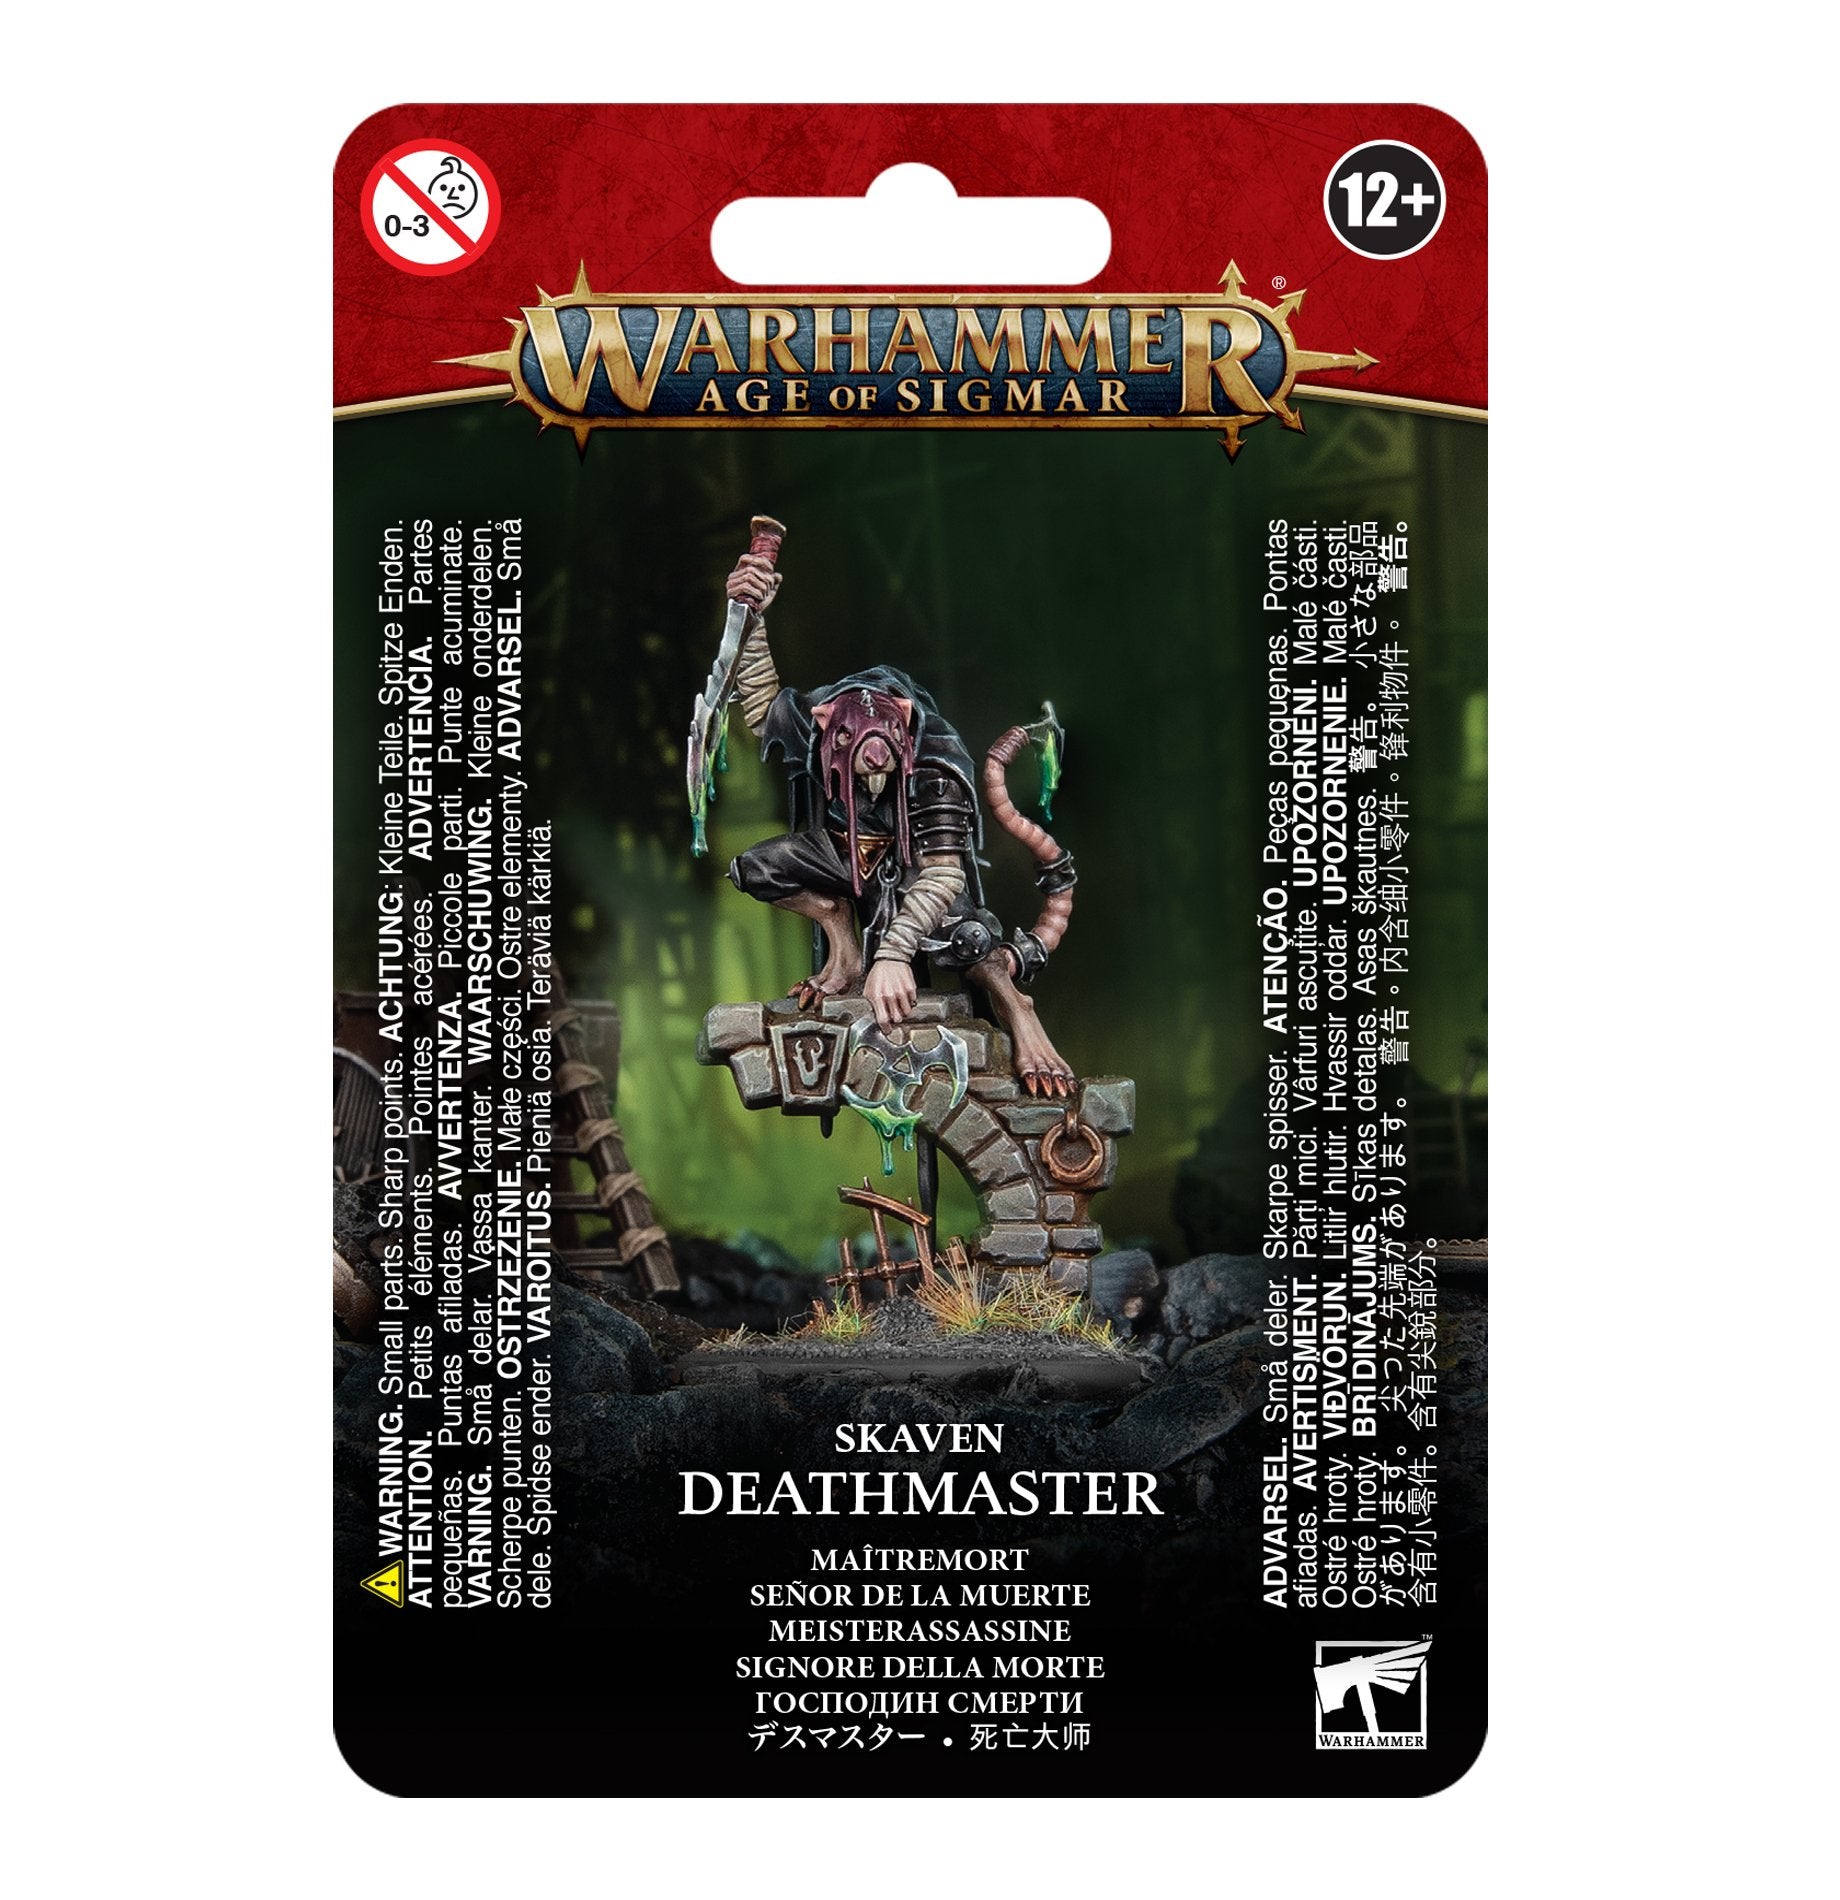 Skaven-deathmaster-Warhammer-age-of-sigmar